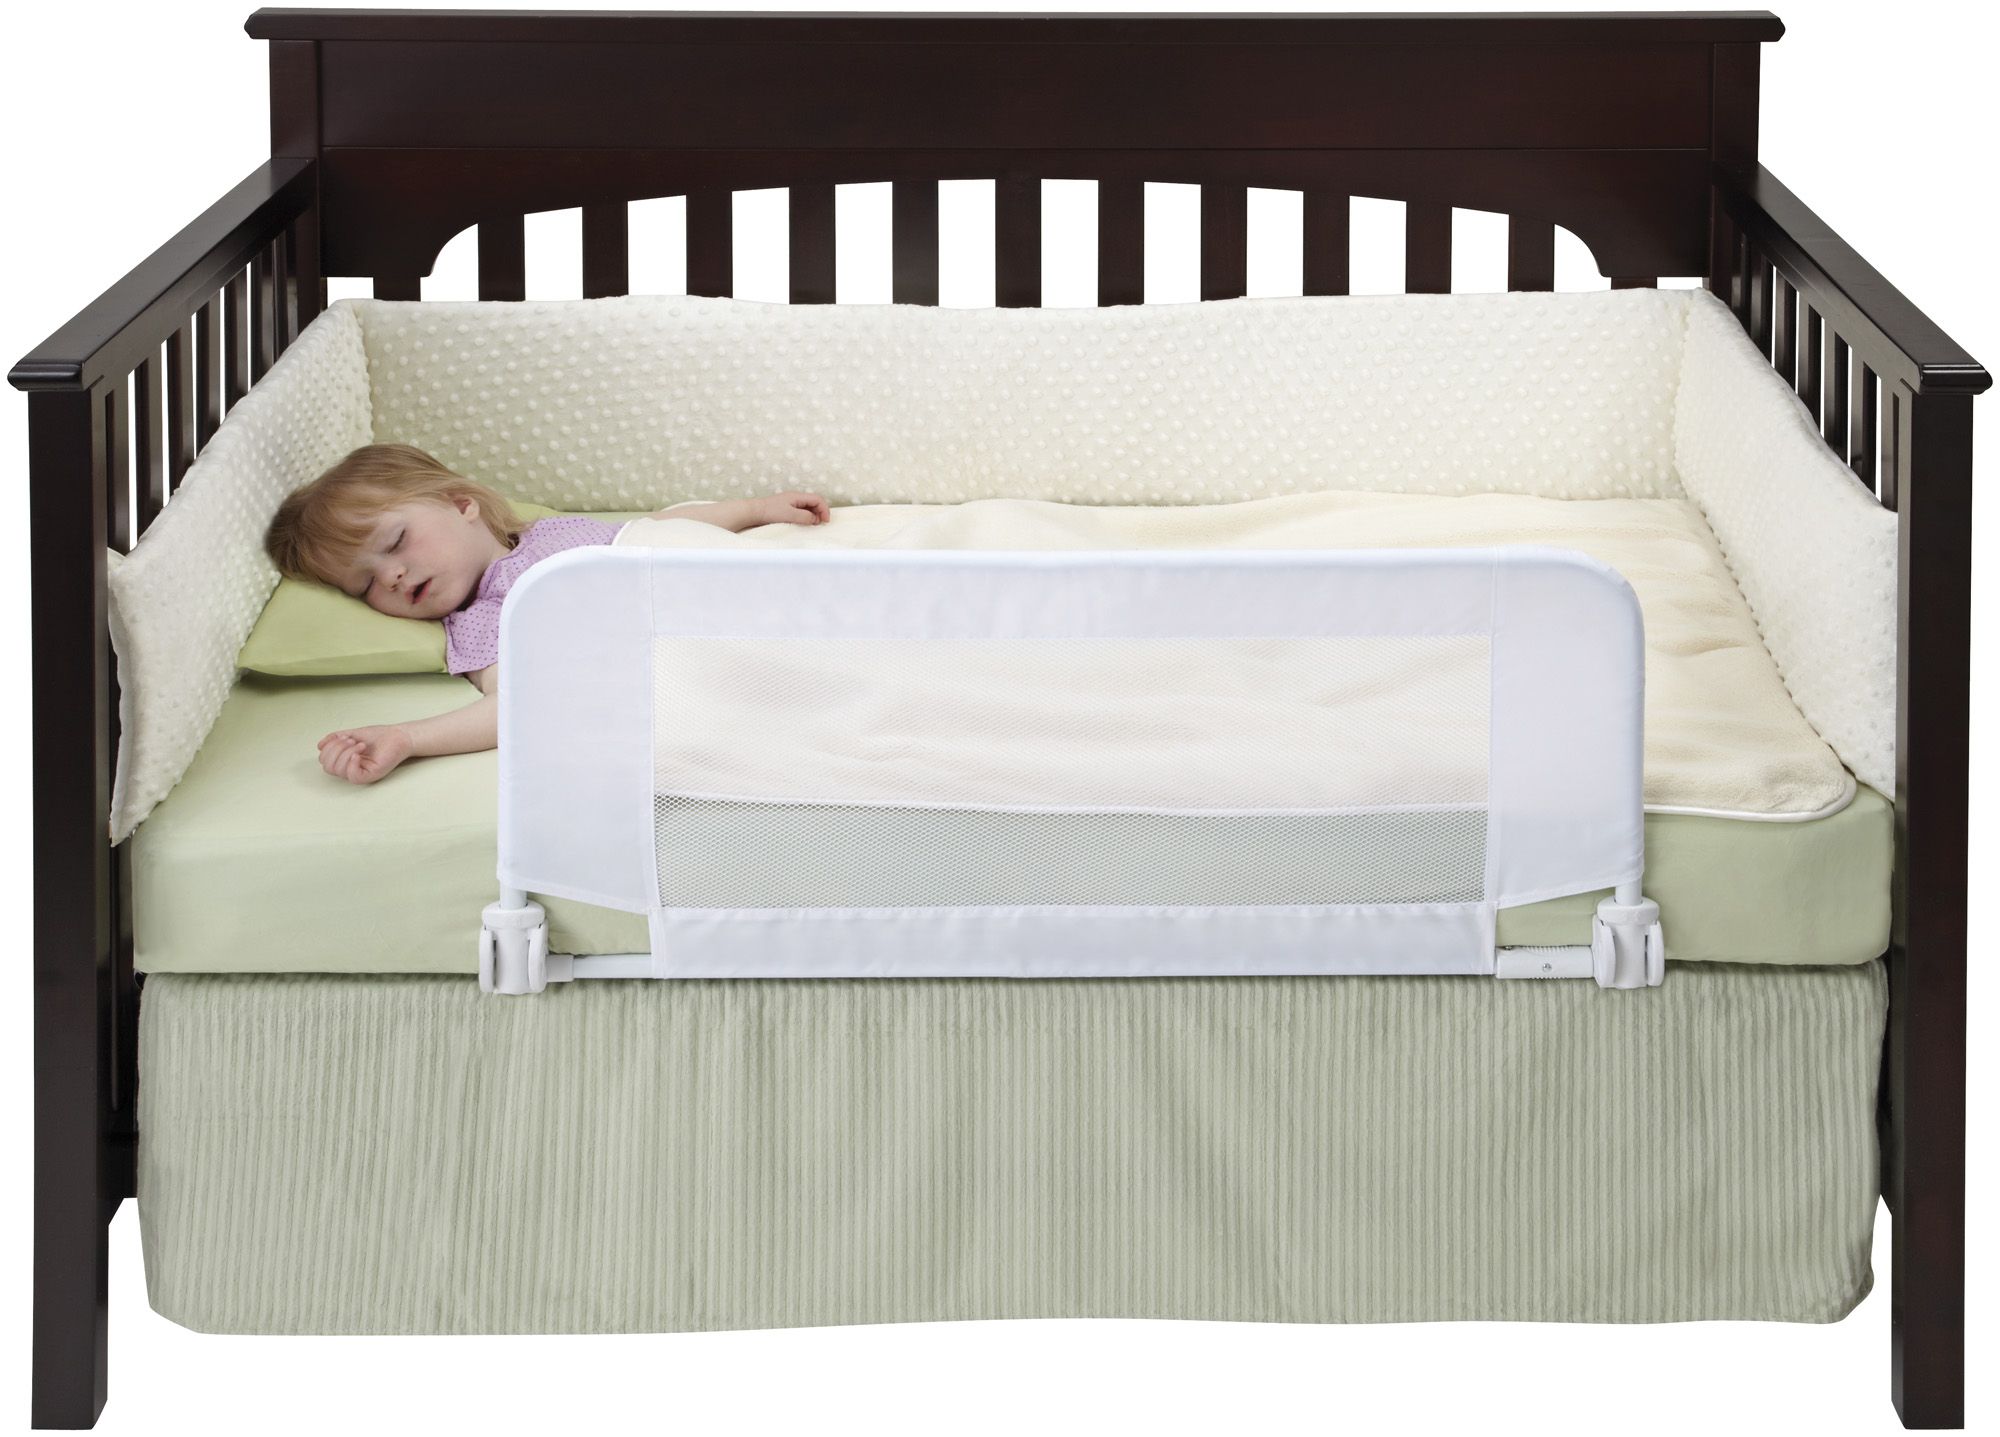 Бортик для кровати ребенка купить. Детские кроватки с бортами. Бортики для кровати. Бортик на кровать для детей. Детские кровати с бортами.